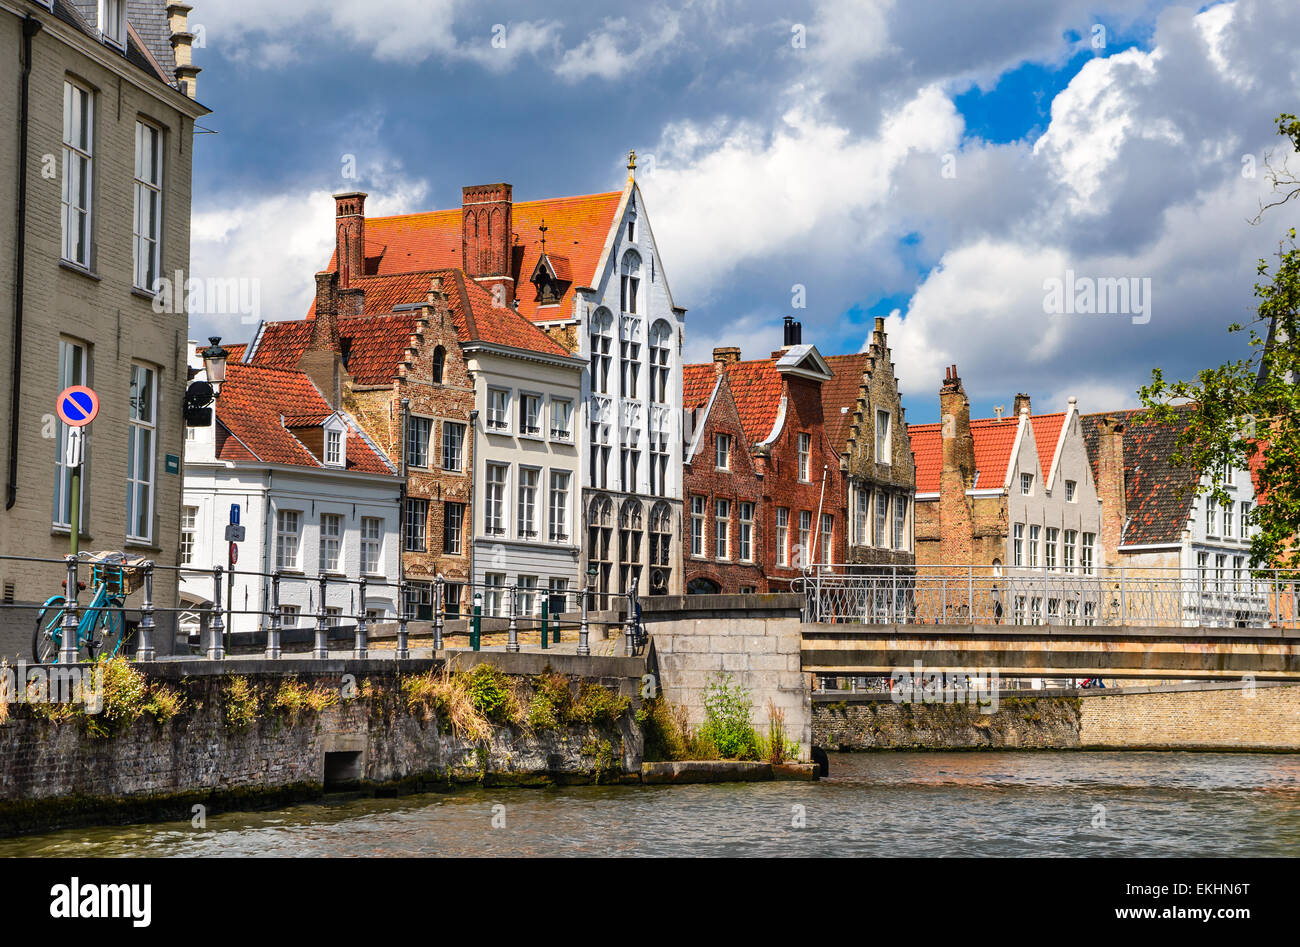 Bruges Bruges, Belgio. Scenario estivo con stile gotico case e canale d'acqua nella medievale città belga delle Fiandre. Foto Stock